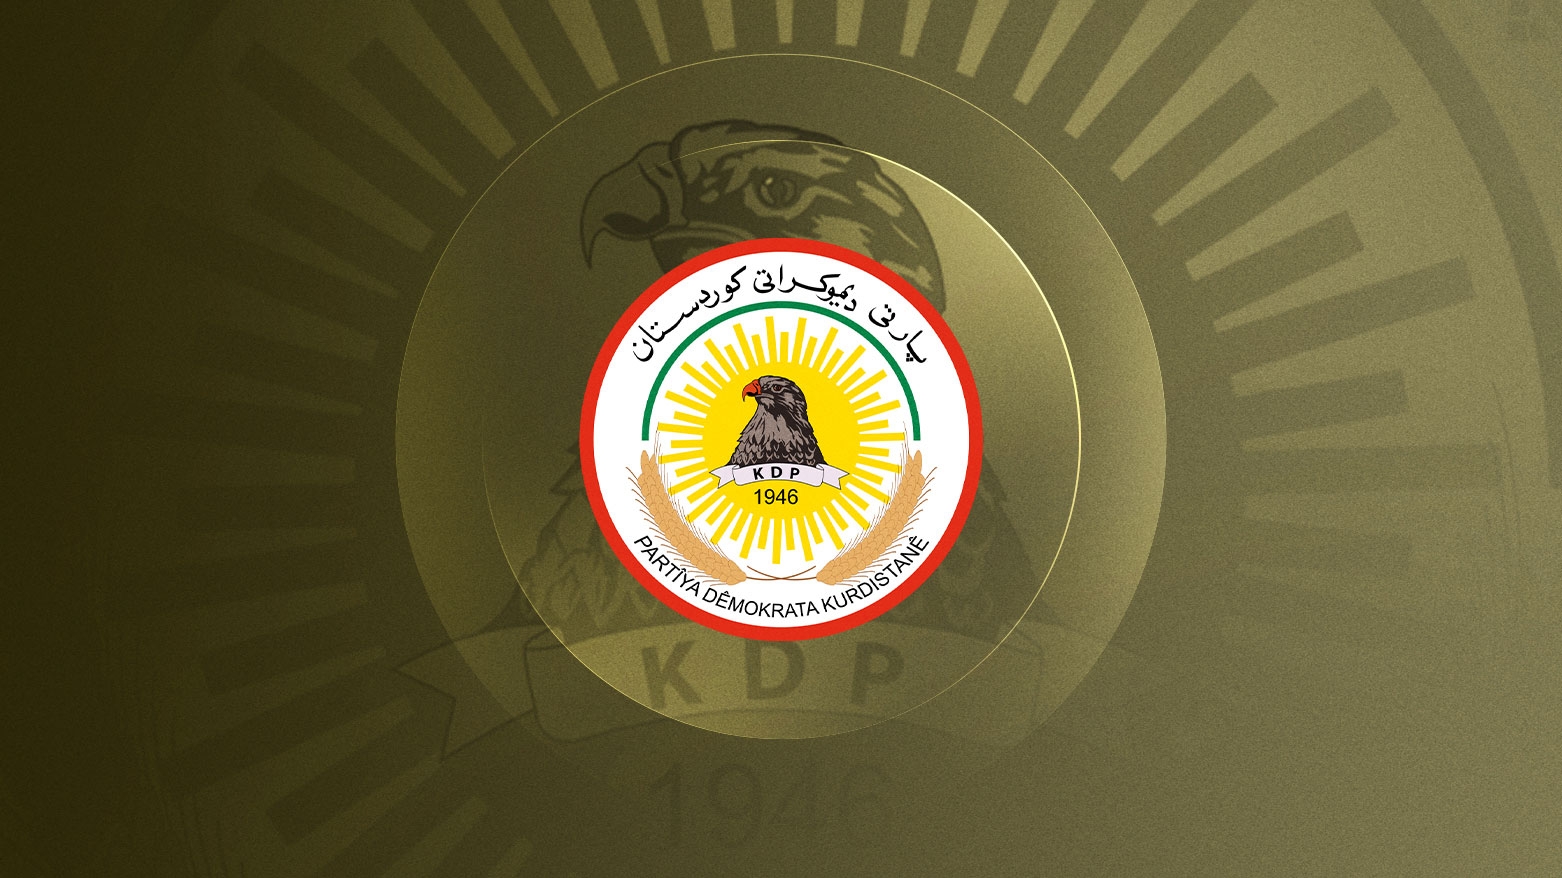 المفوضية : الحزب الديمقراطي لم يقدم قائمة مرشحيه لانتخابات برلمان كوردستان